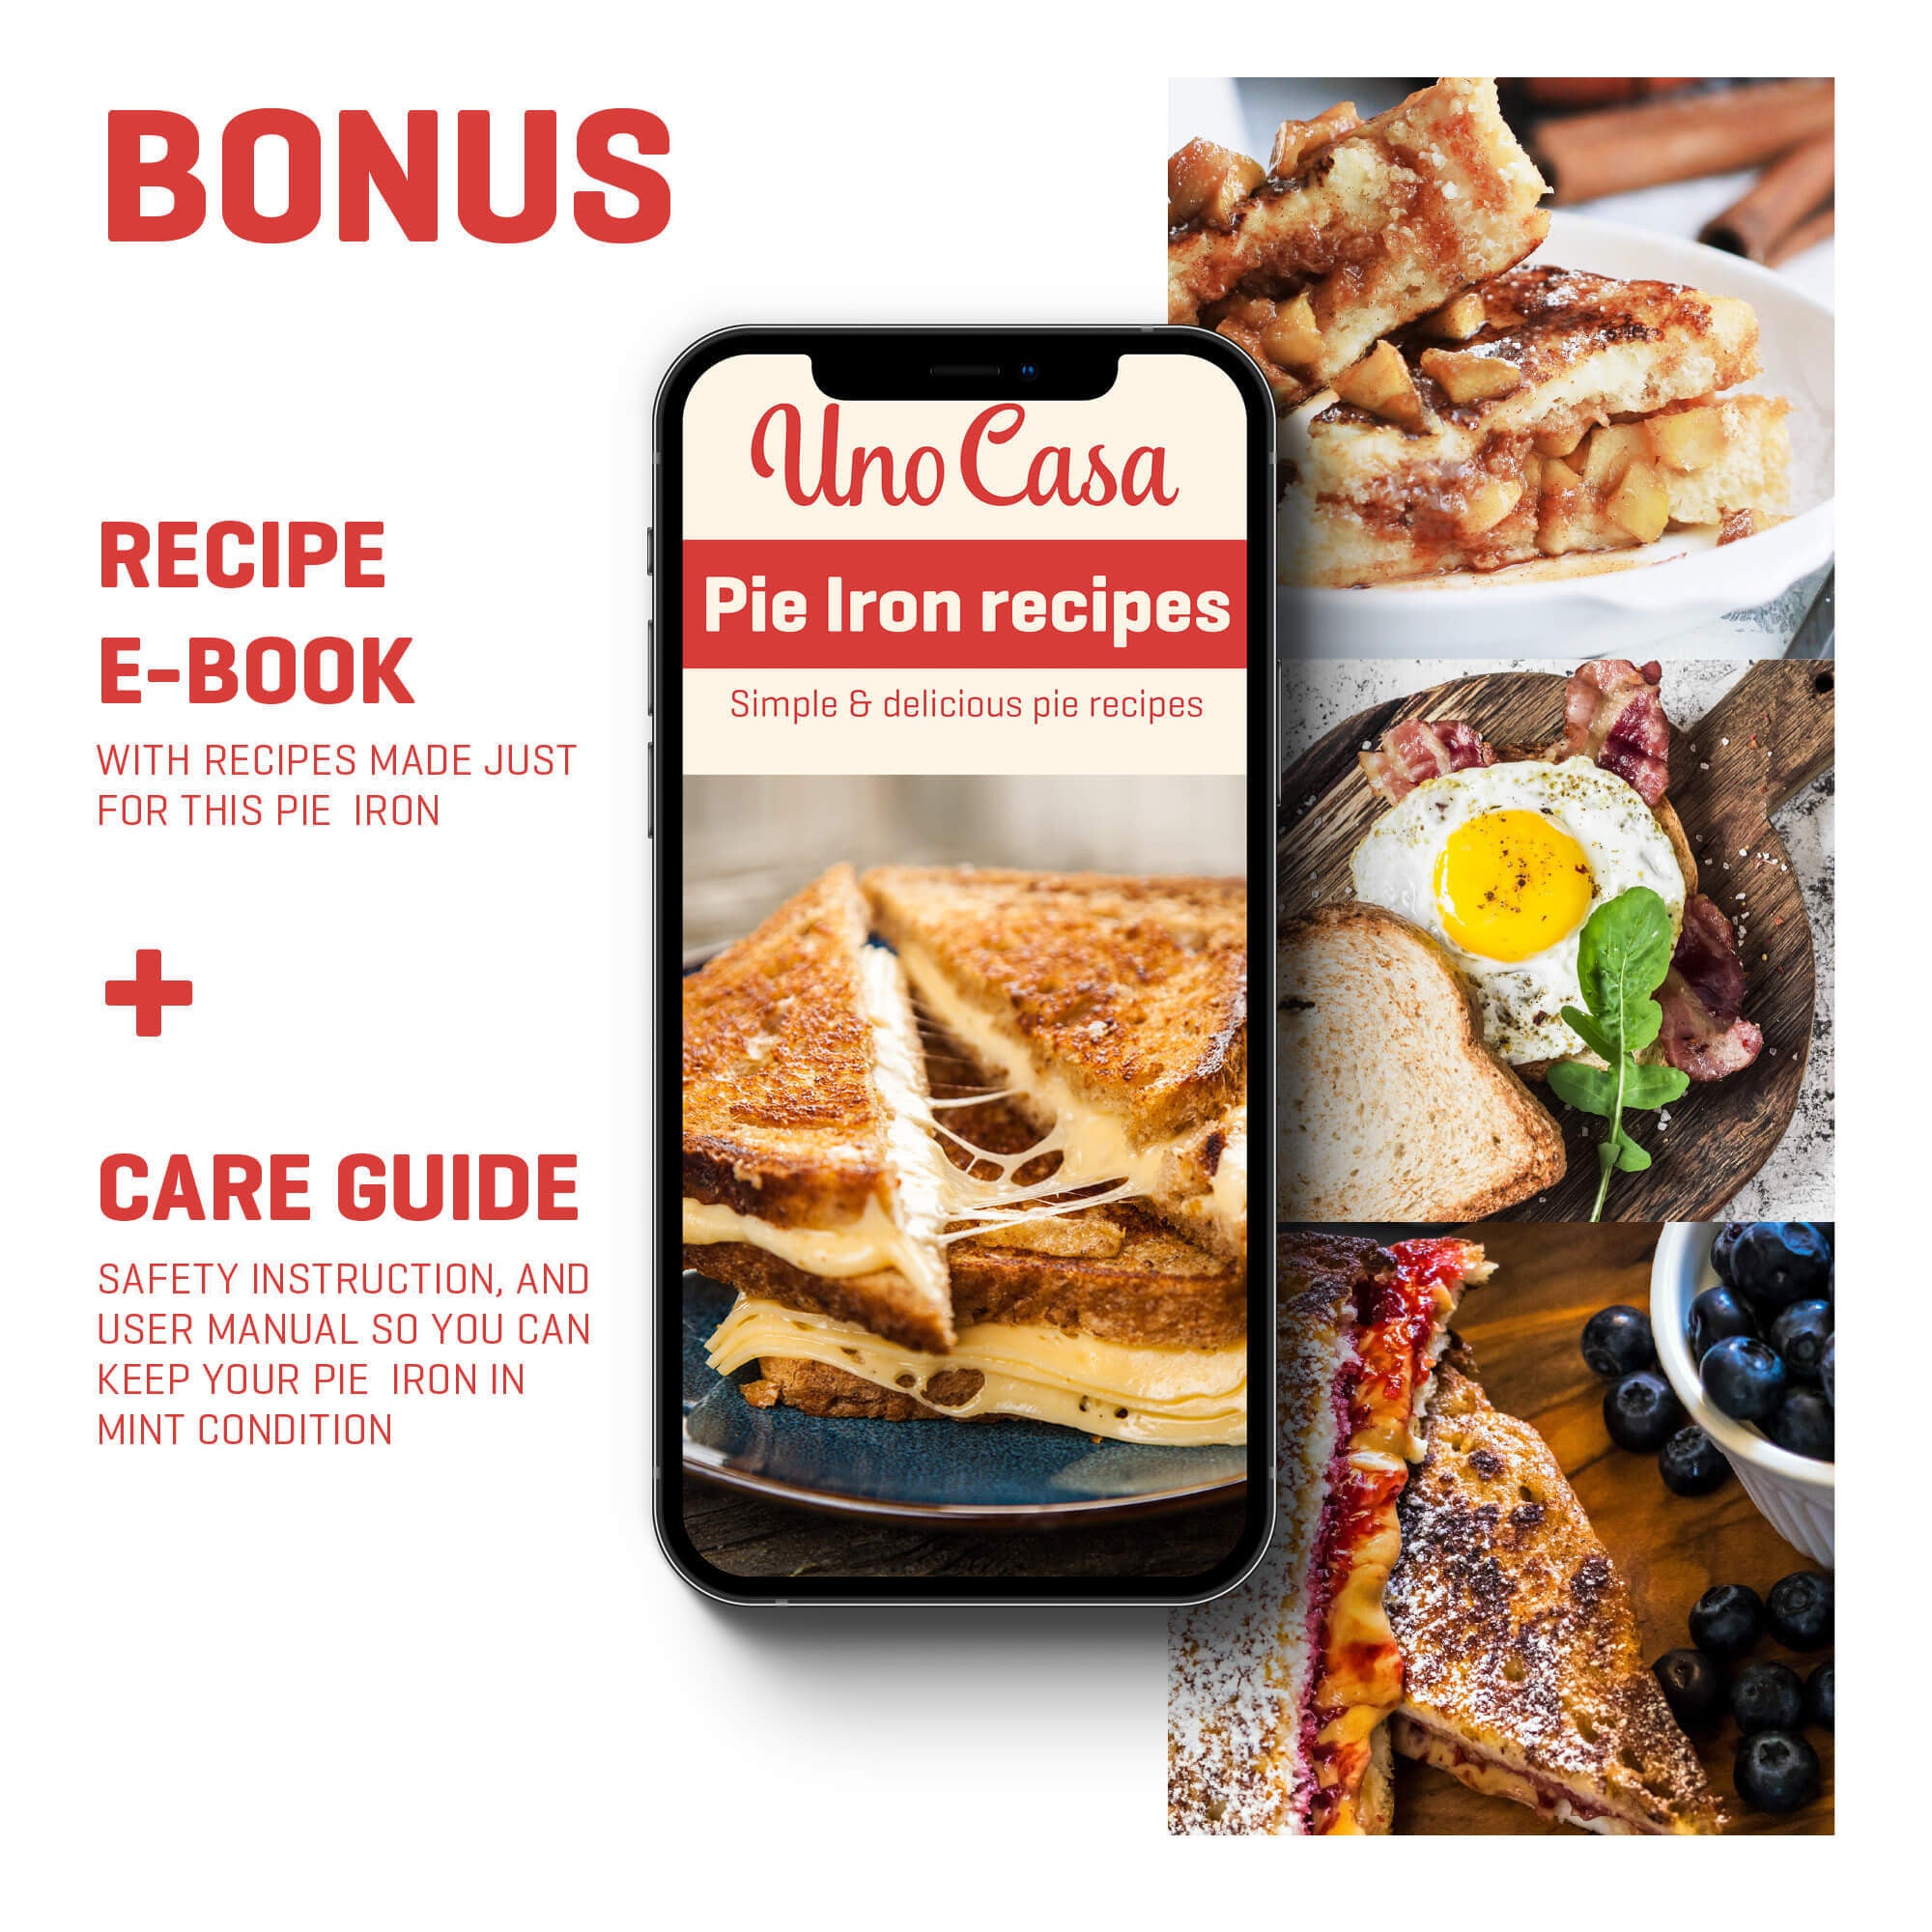 Pie Iron Breakfast Recipe, Food Network Kitchen